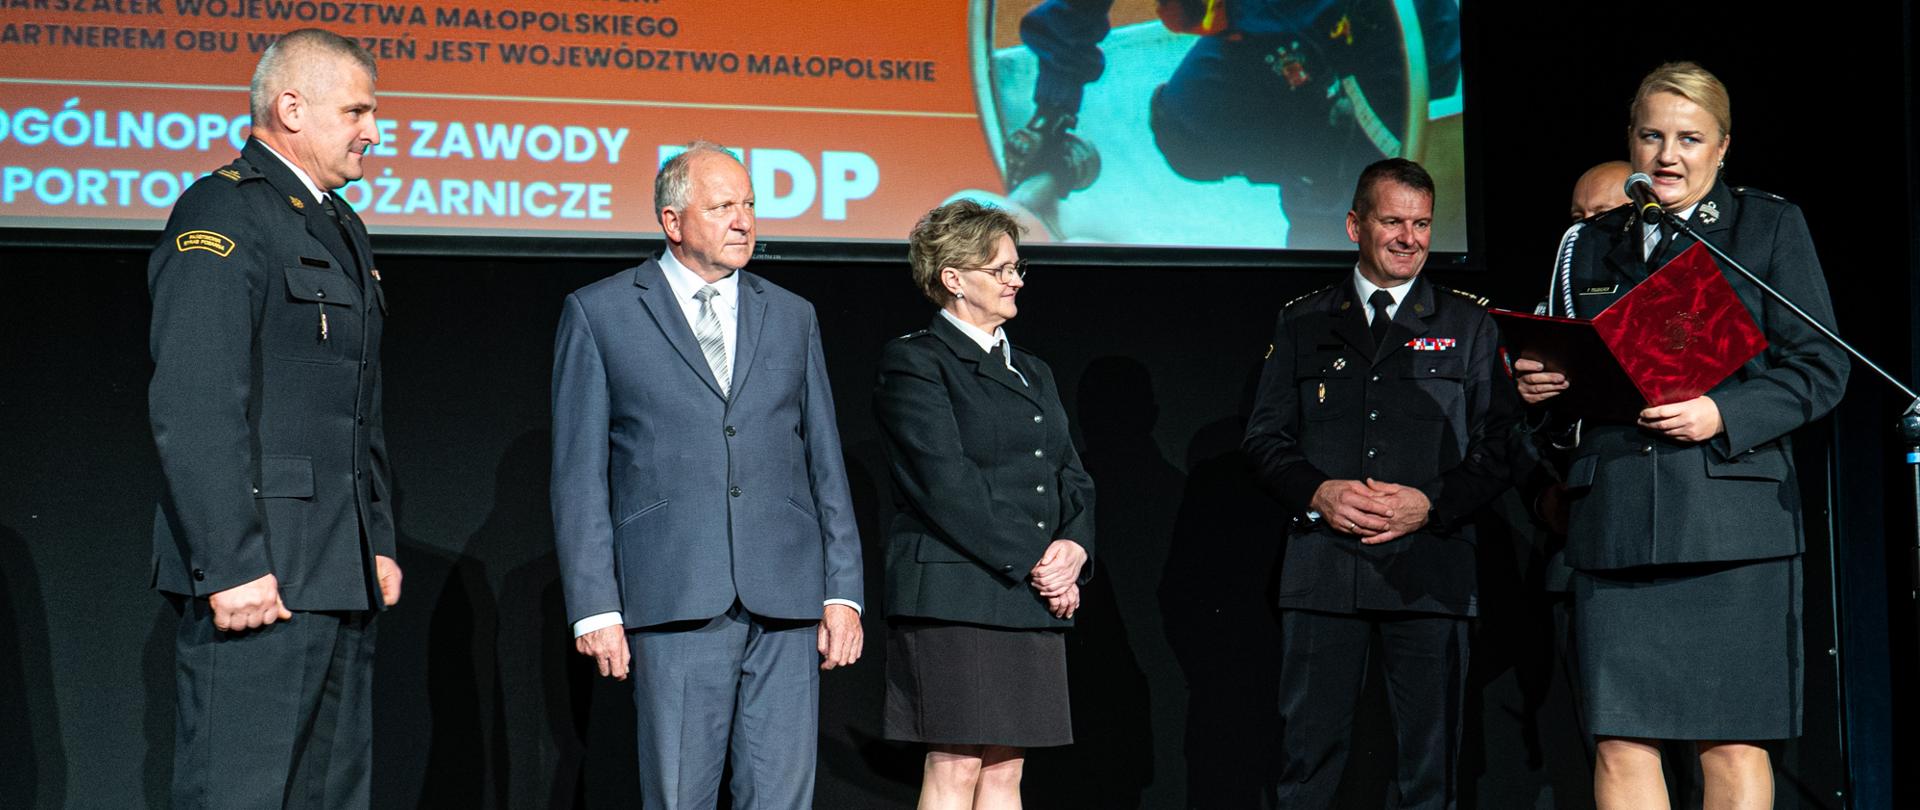 Na scenie sali widowiskowej stoją przedstawiciele gminy i strażaków, za nimi fragment ekran z napisem Ogólnopolskie zawody sportowo-pożarnicze MDP